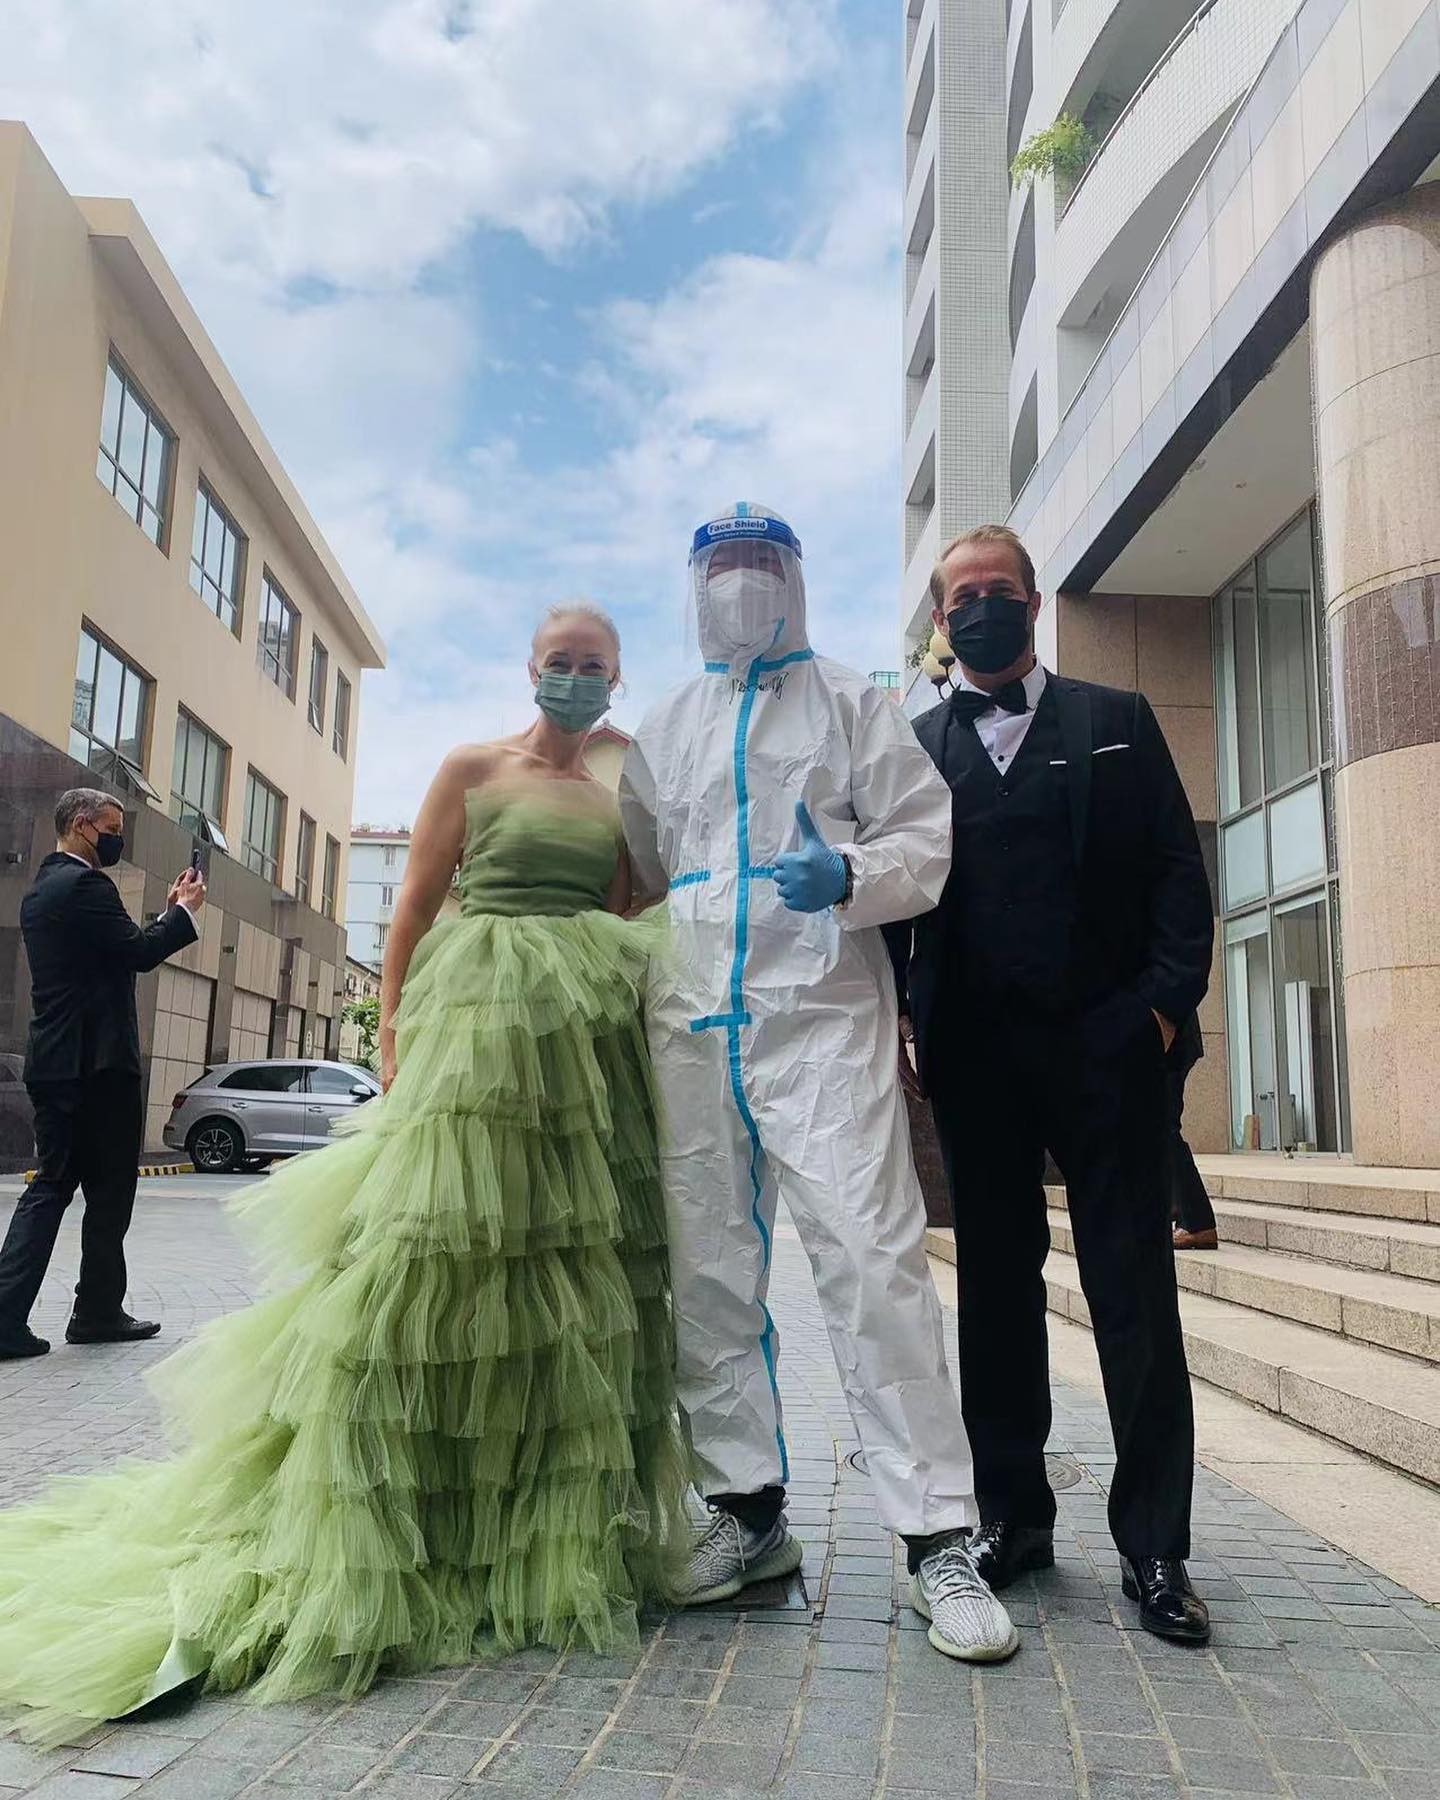 A educadora de etiqueta, Sara Jane Ho, publicou em suas redes sociais algumas fotos onde vizinhos vestem roupas de gala para realizarem testes de Covid-19, na China (Foto: Reprodução/ @sarajaneho)